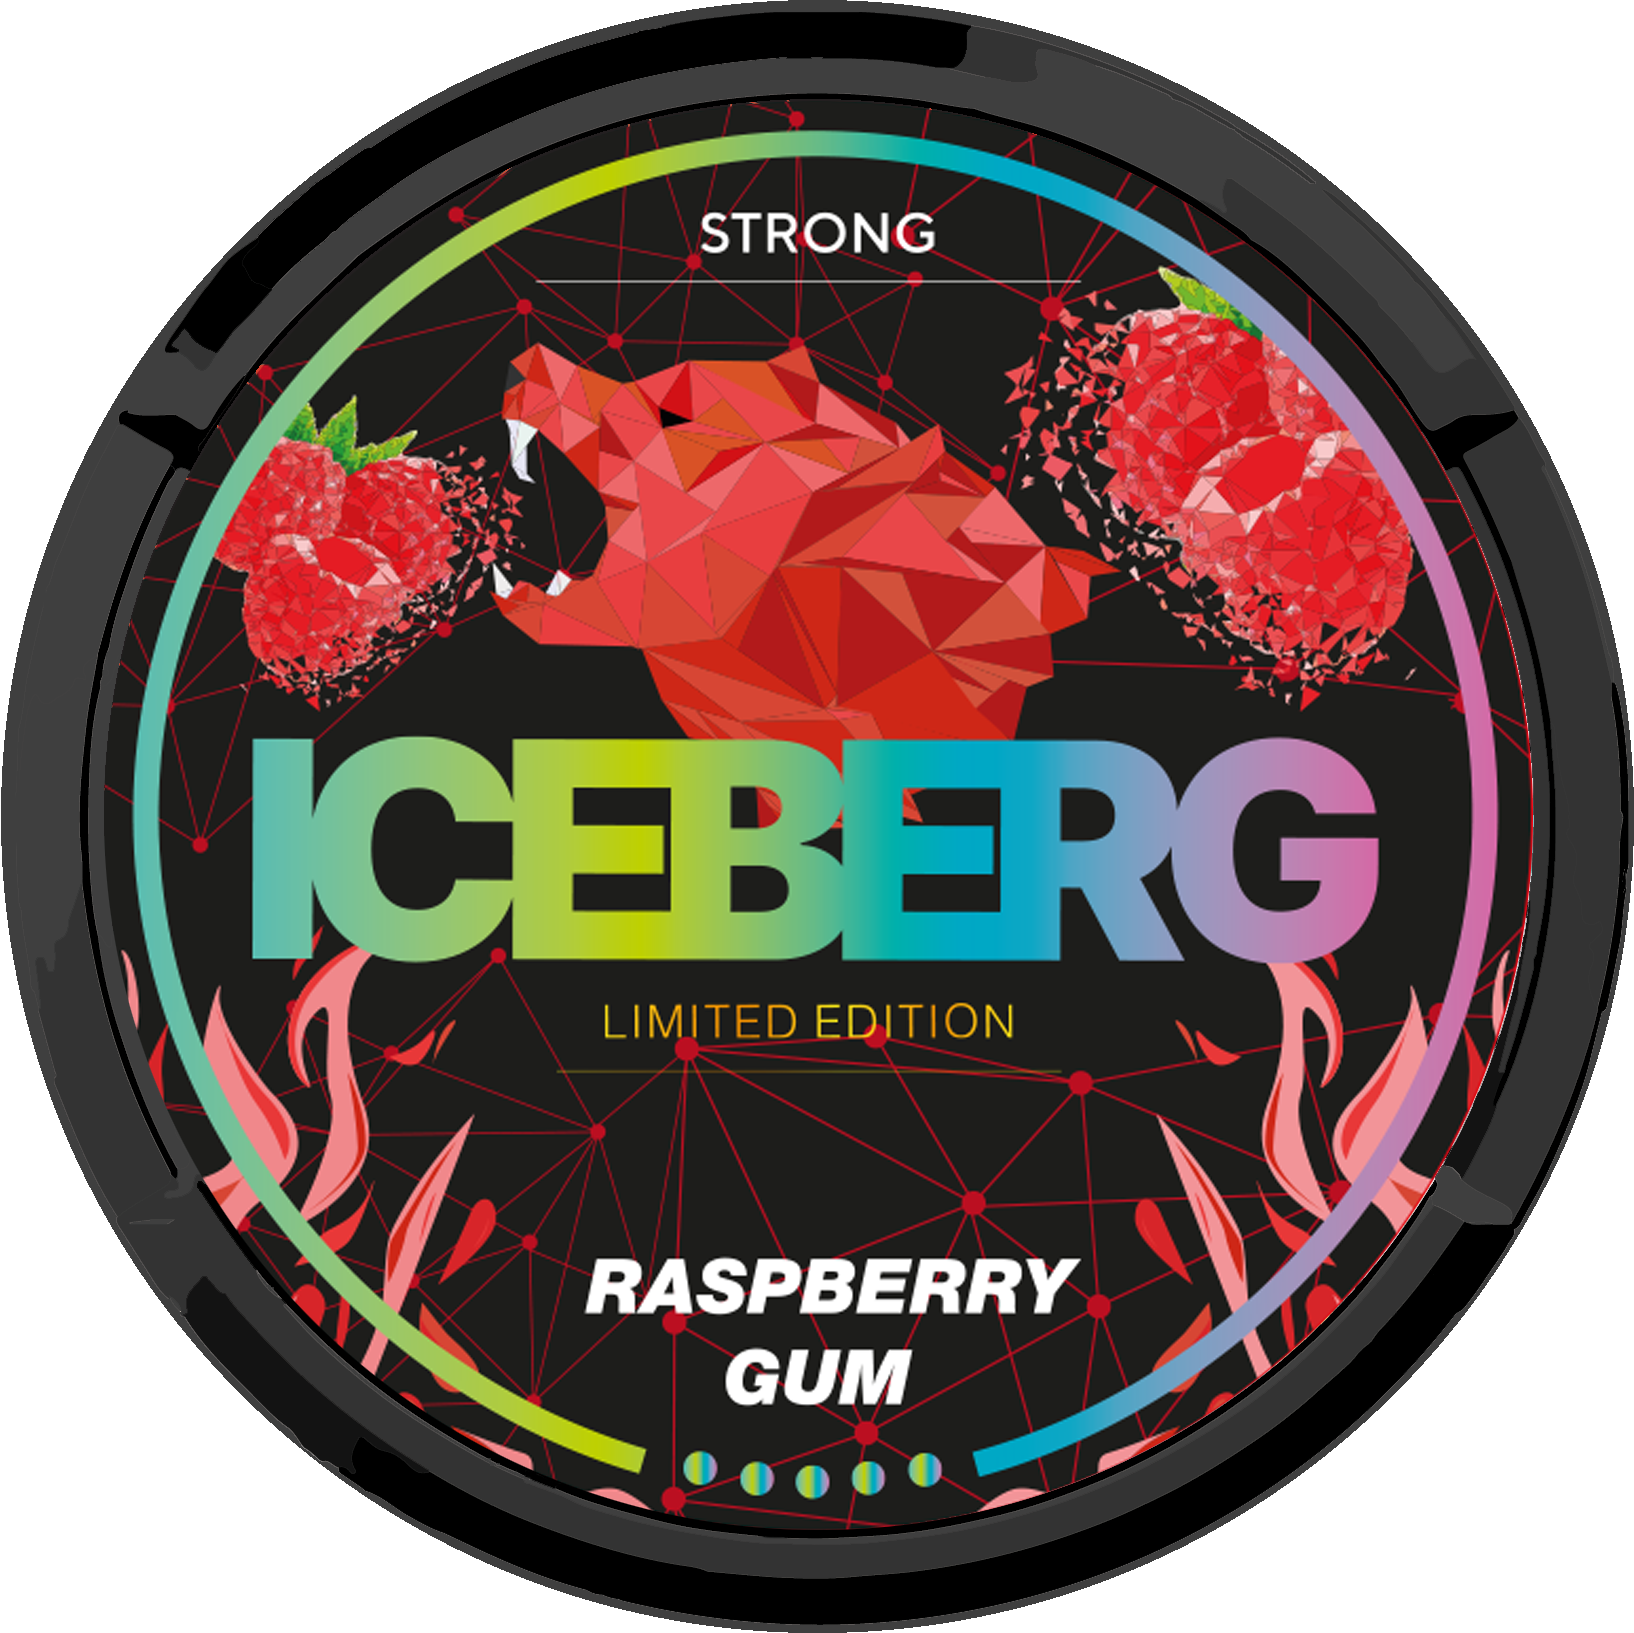 ICEBERG Raspberry gum Strong